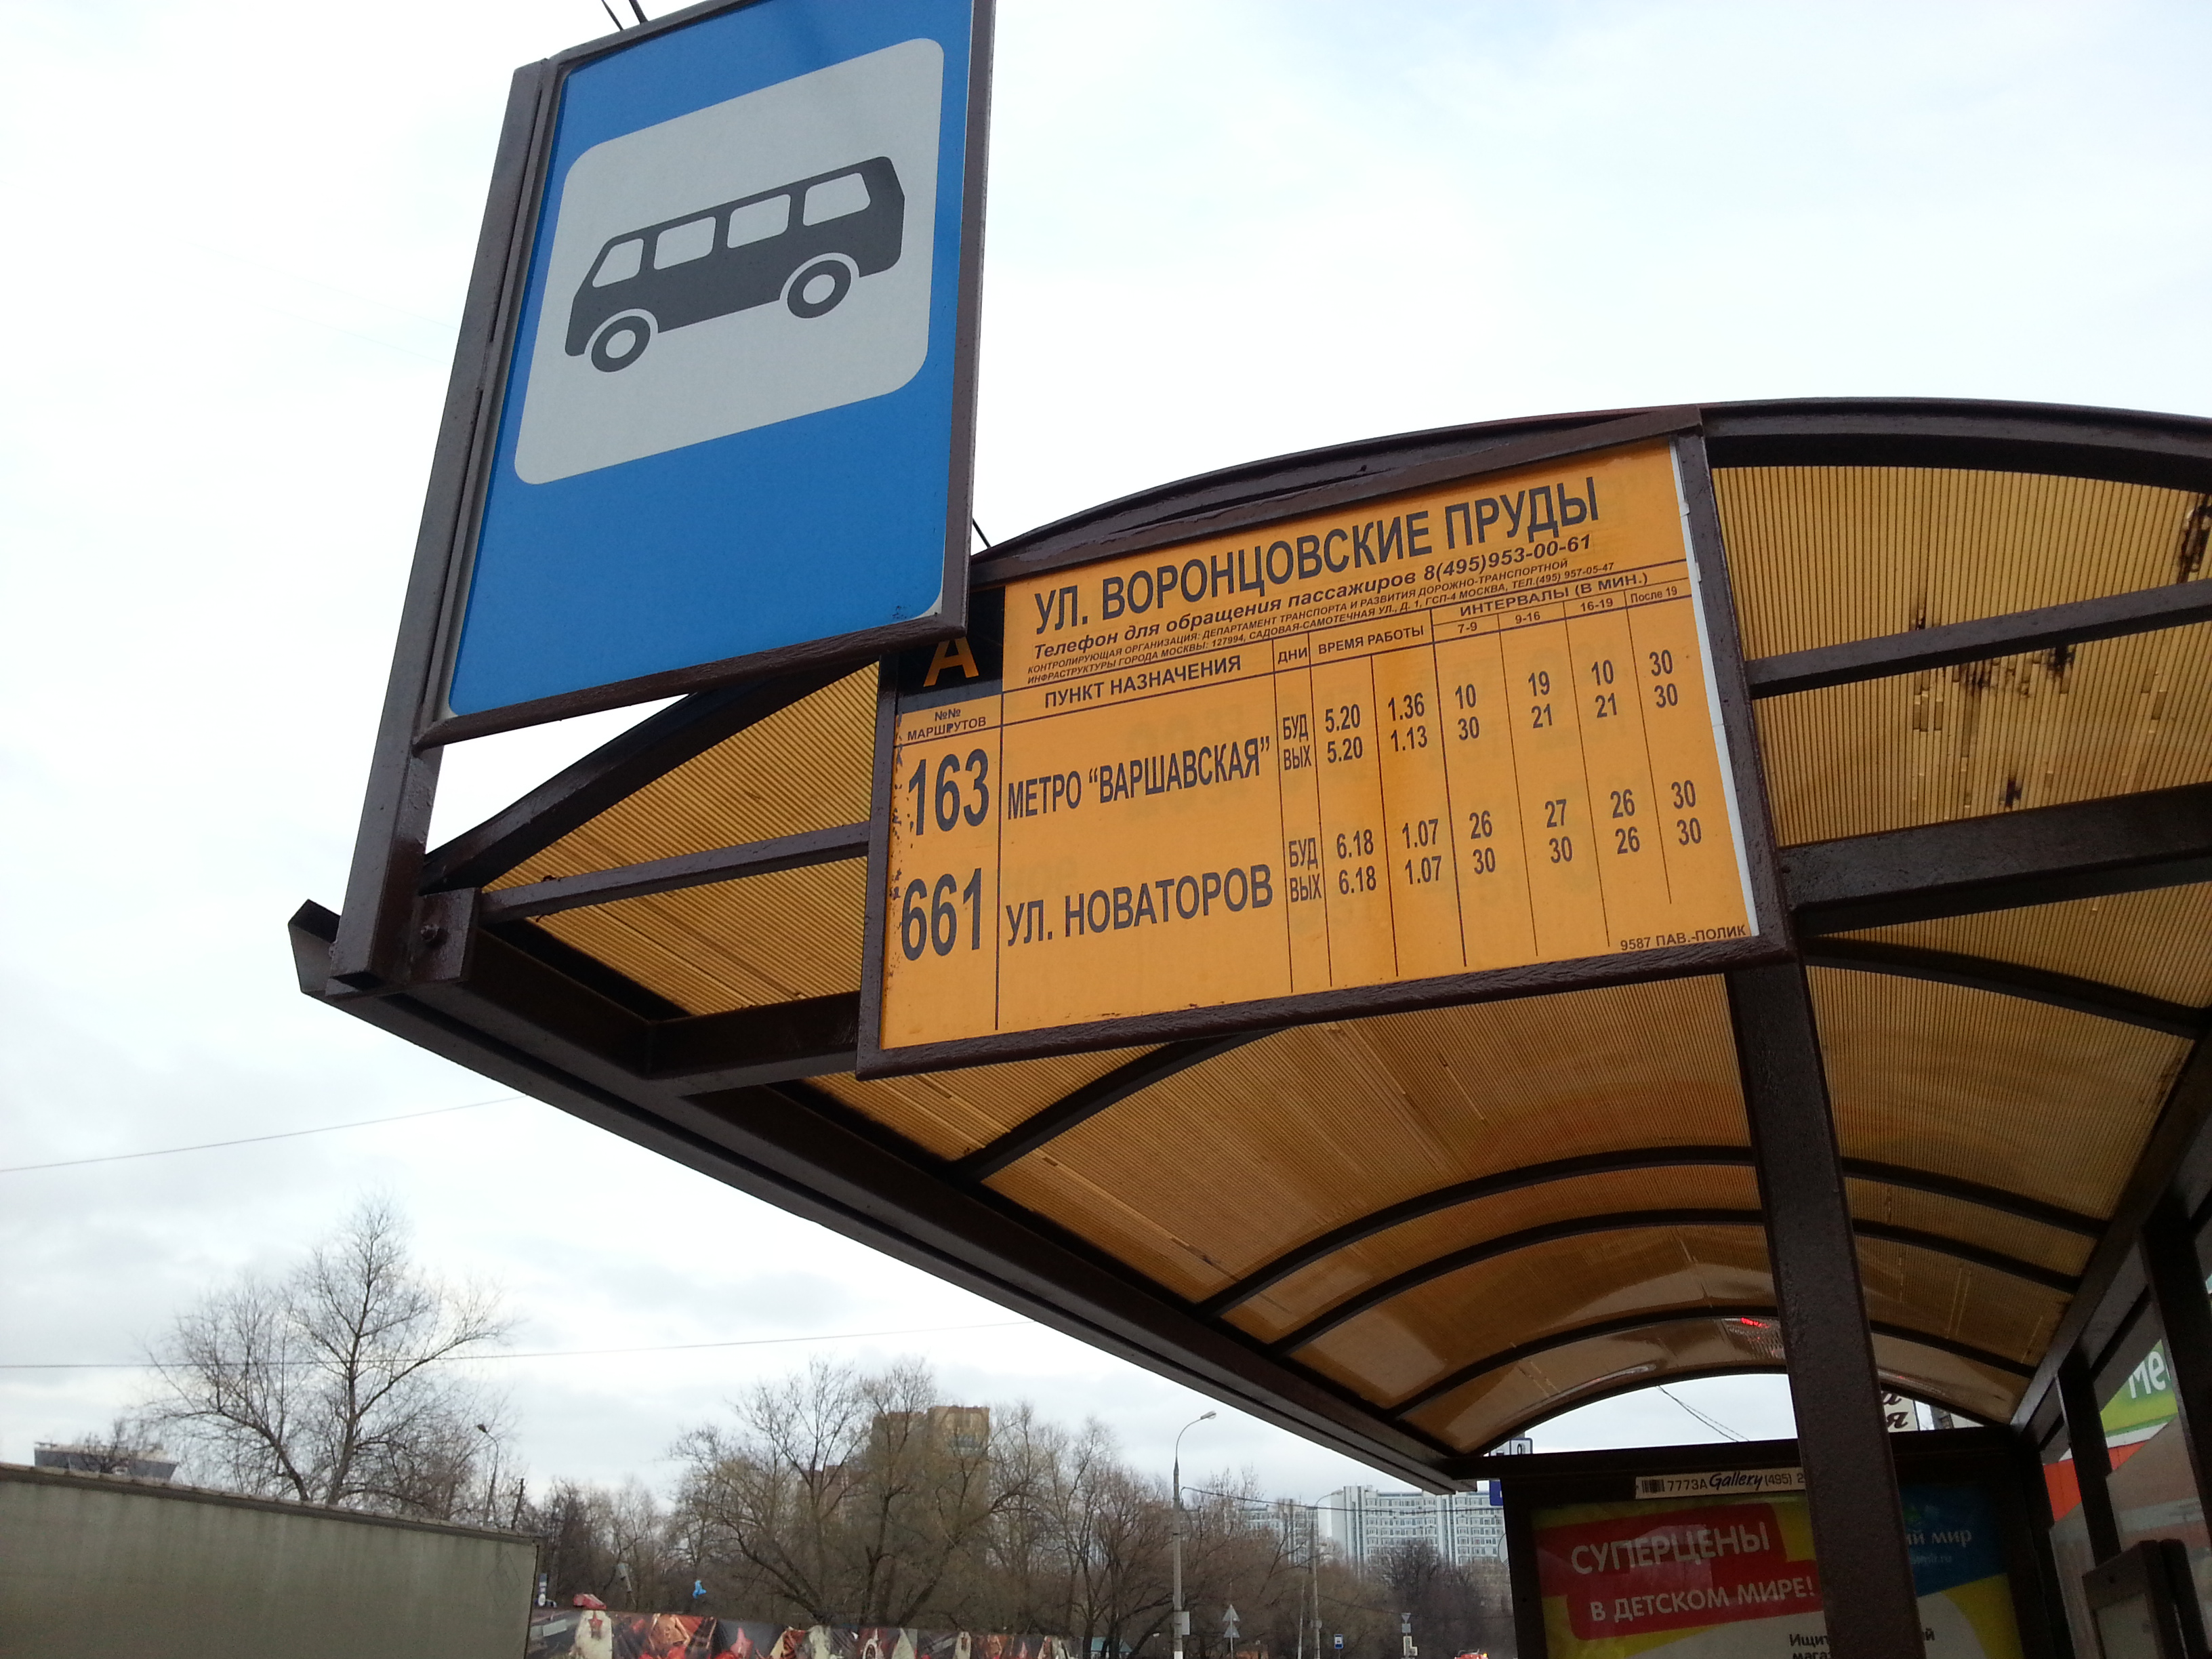 Ближайший автобус на москву. Название остановок общественного транспорта. Название автобусной остановки. Название остановки автобуса. Ближайшая остановка общественного транспорта.